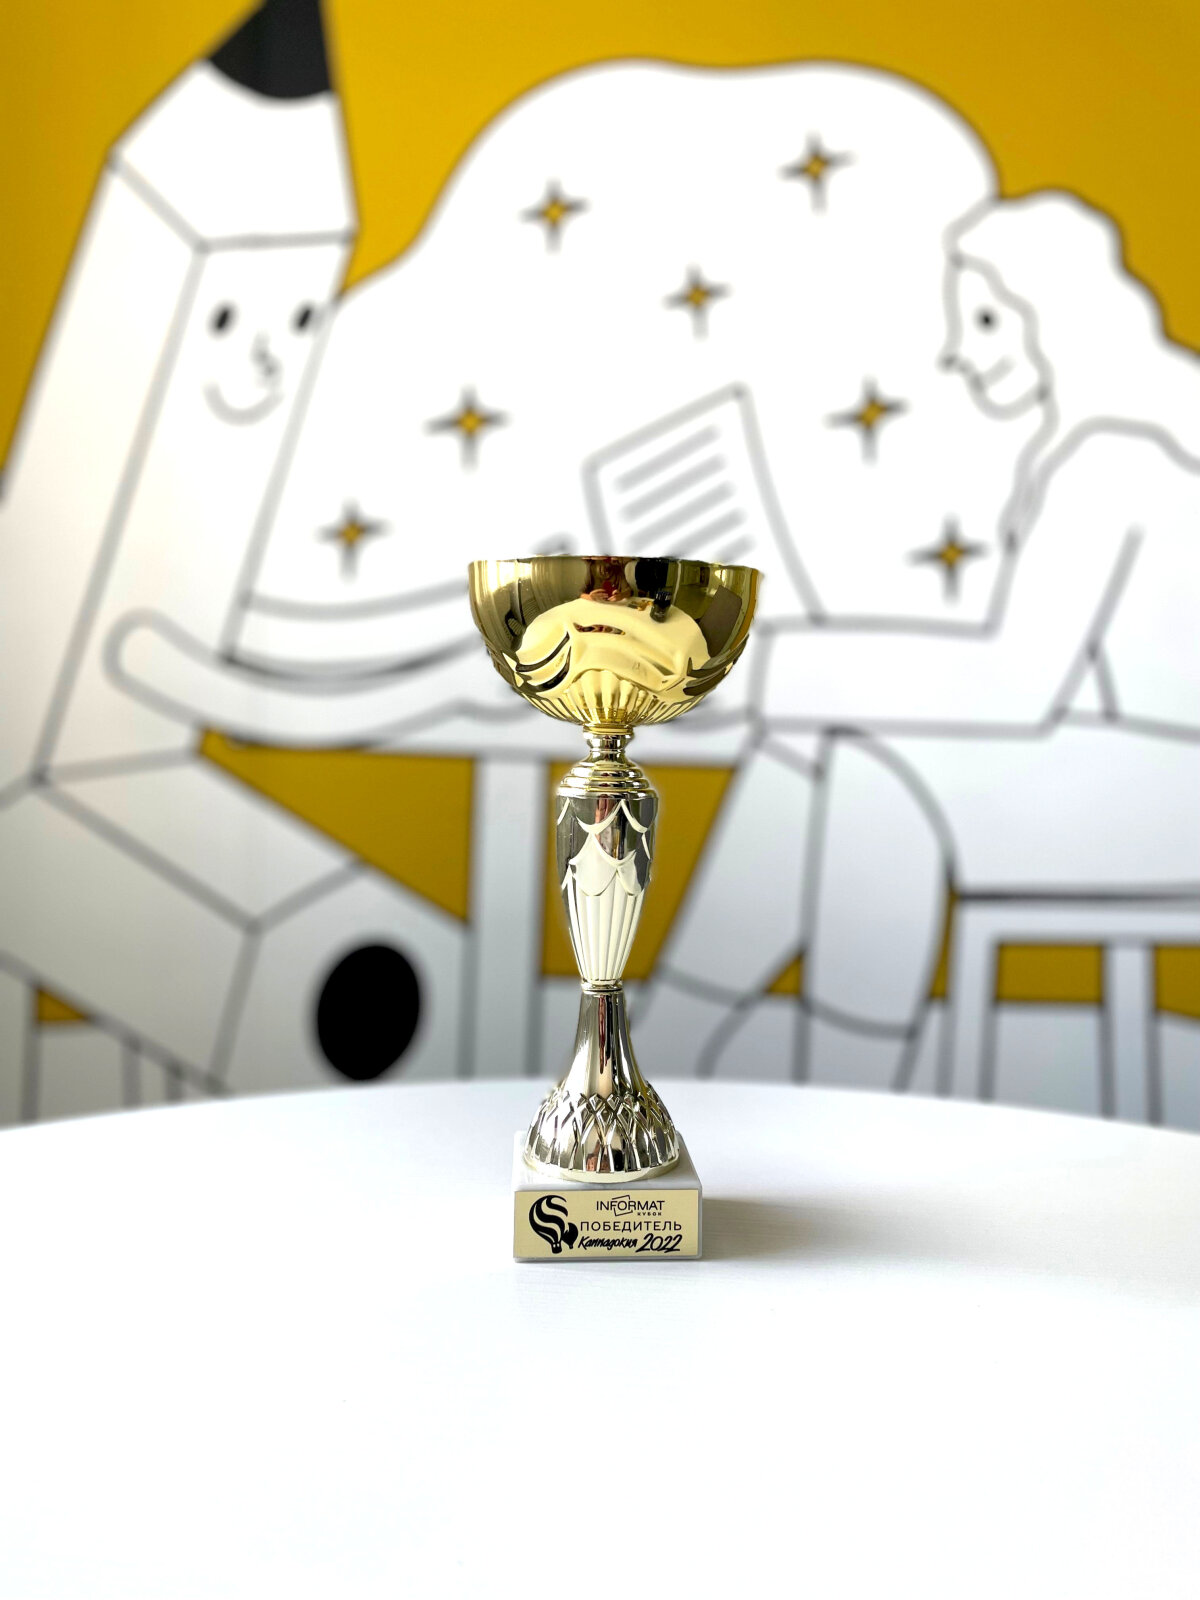 Кубок INFORMAT 2022 - поздравляем победителей!